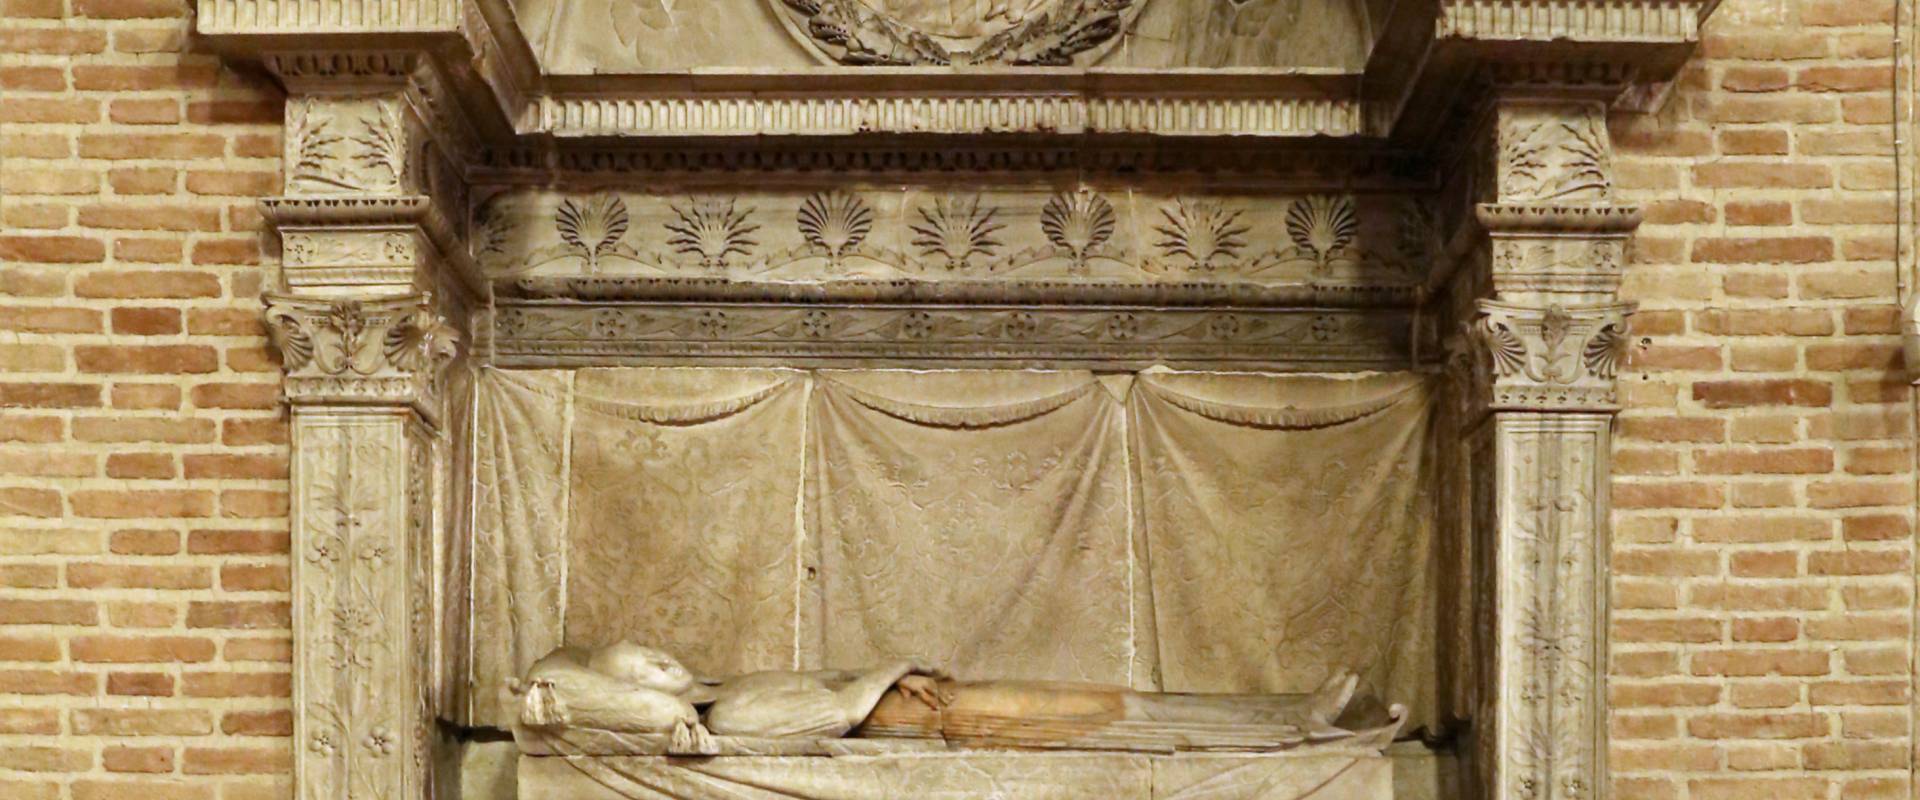 Francesco di simone ferrucci, monumento di barbara manfredi, 1466-68, 01 photo by Sailko